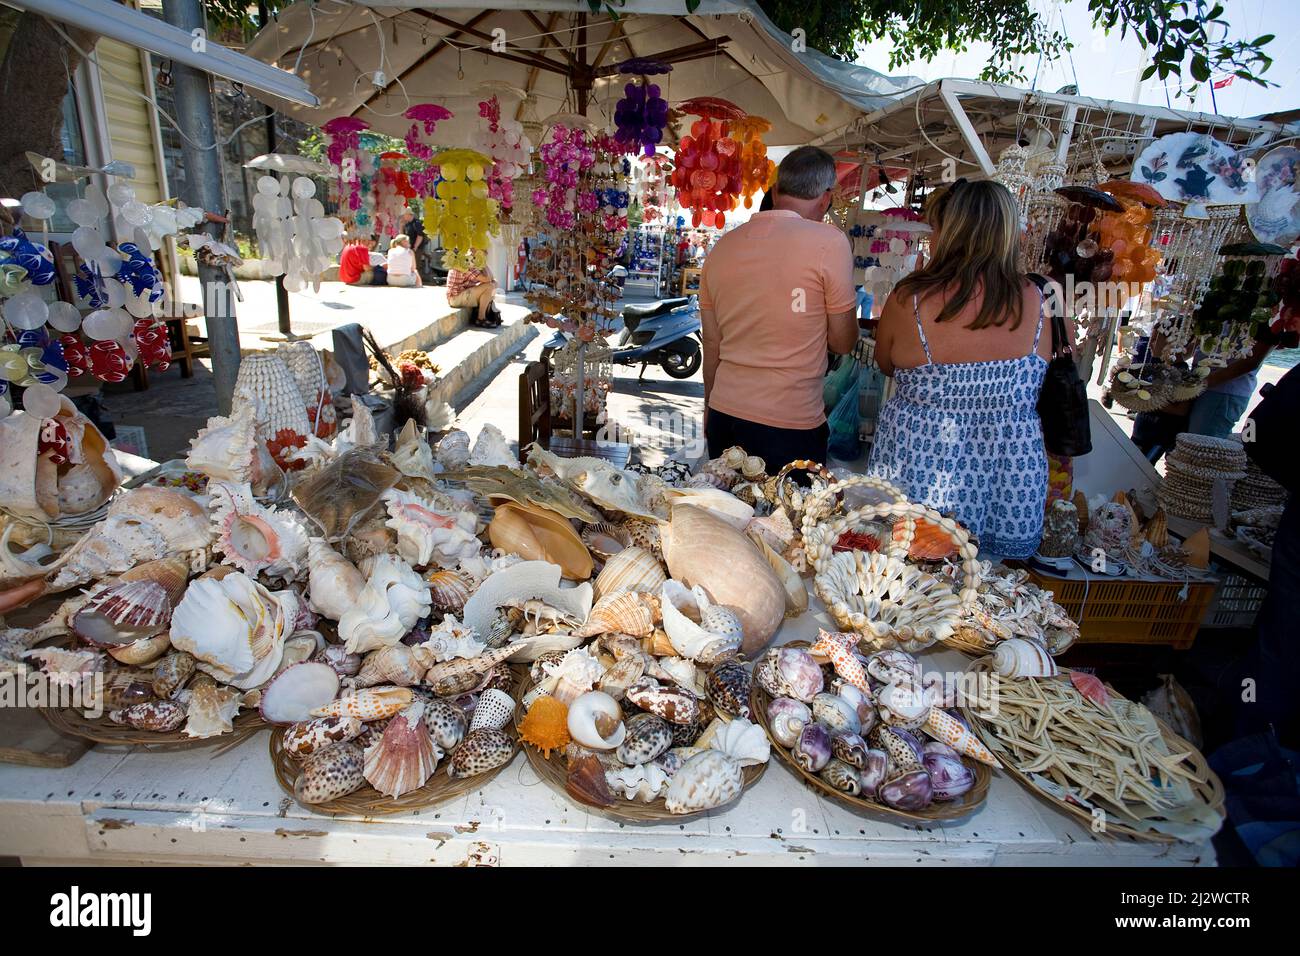 Tienda vende animales marinos muertos y conchas como souvenirs, Bodrum, Aegaeis, Turquía, Mar Mediterráneo Foto de stock